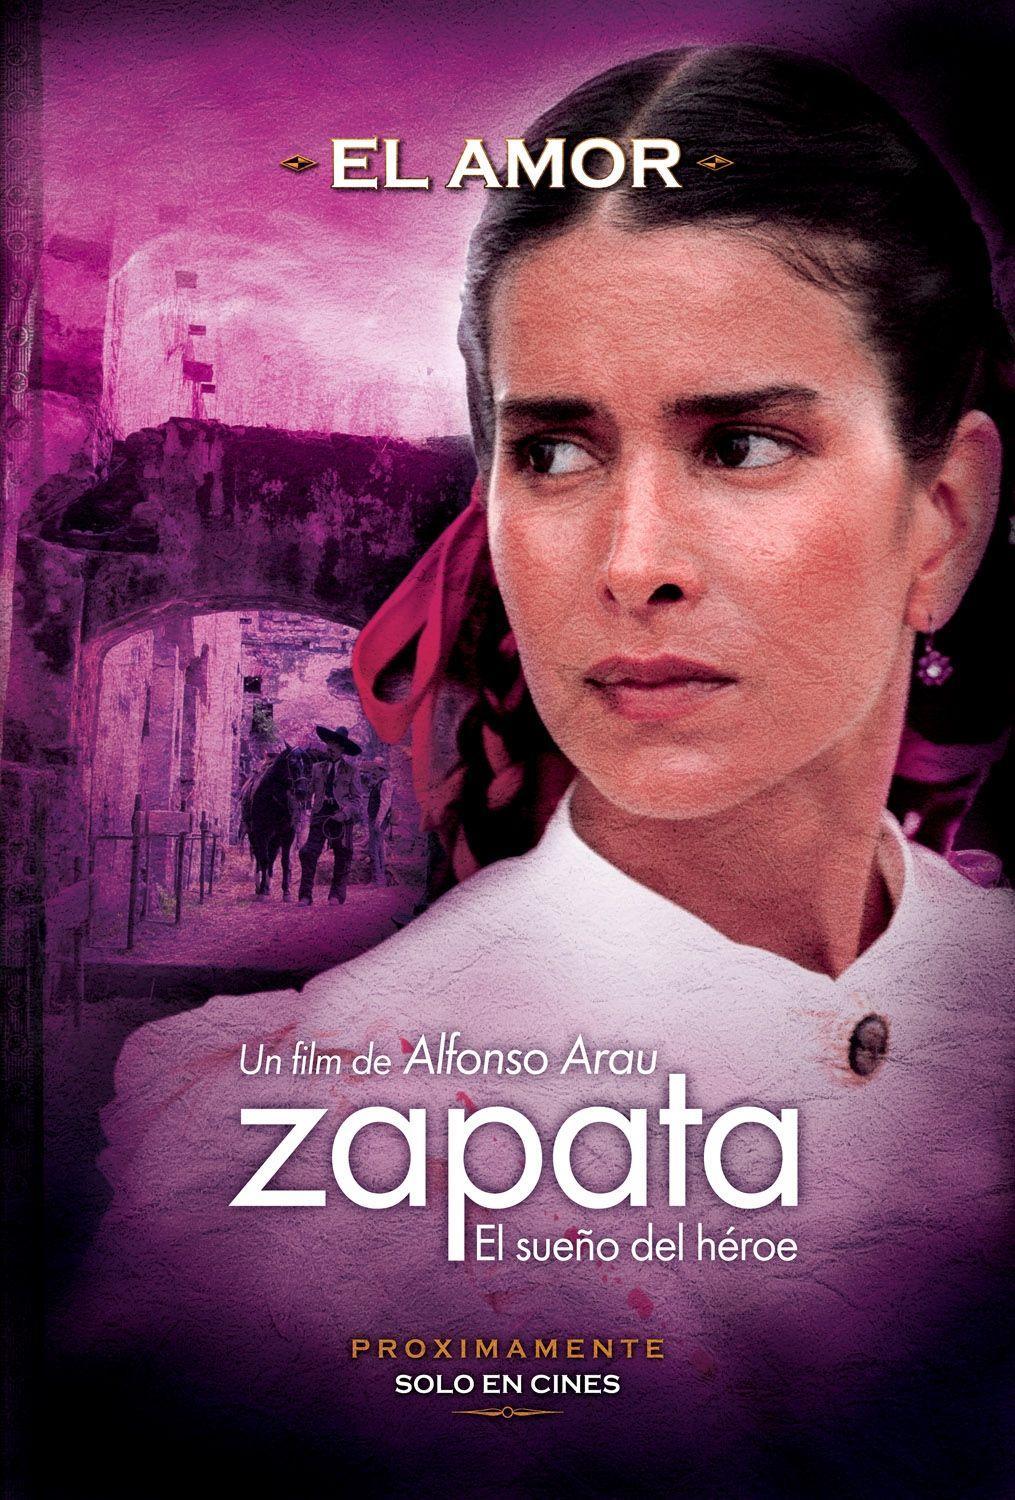 Постер фильма Zapata - El sueño del héroe